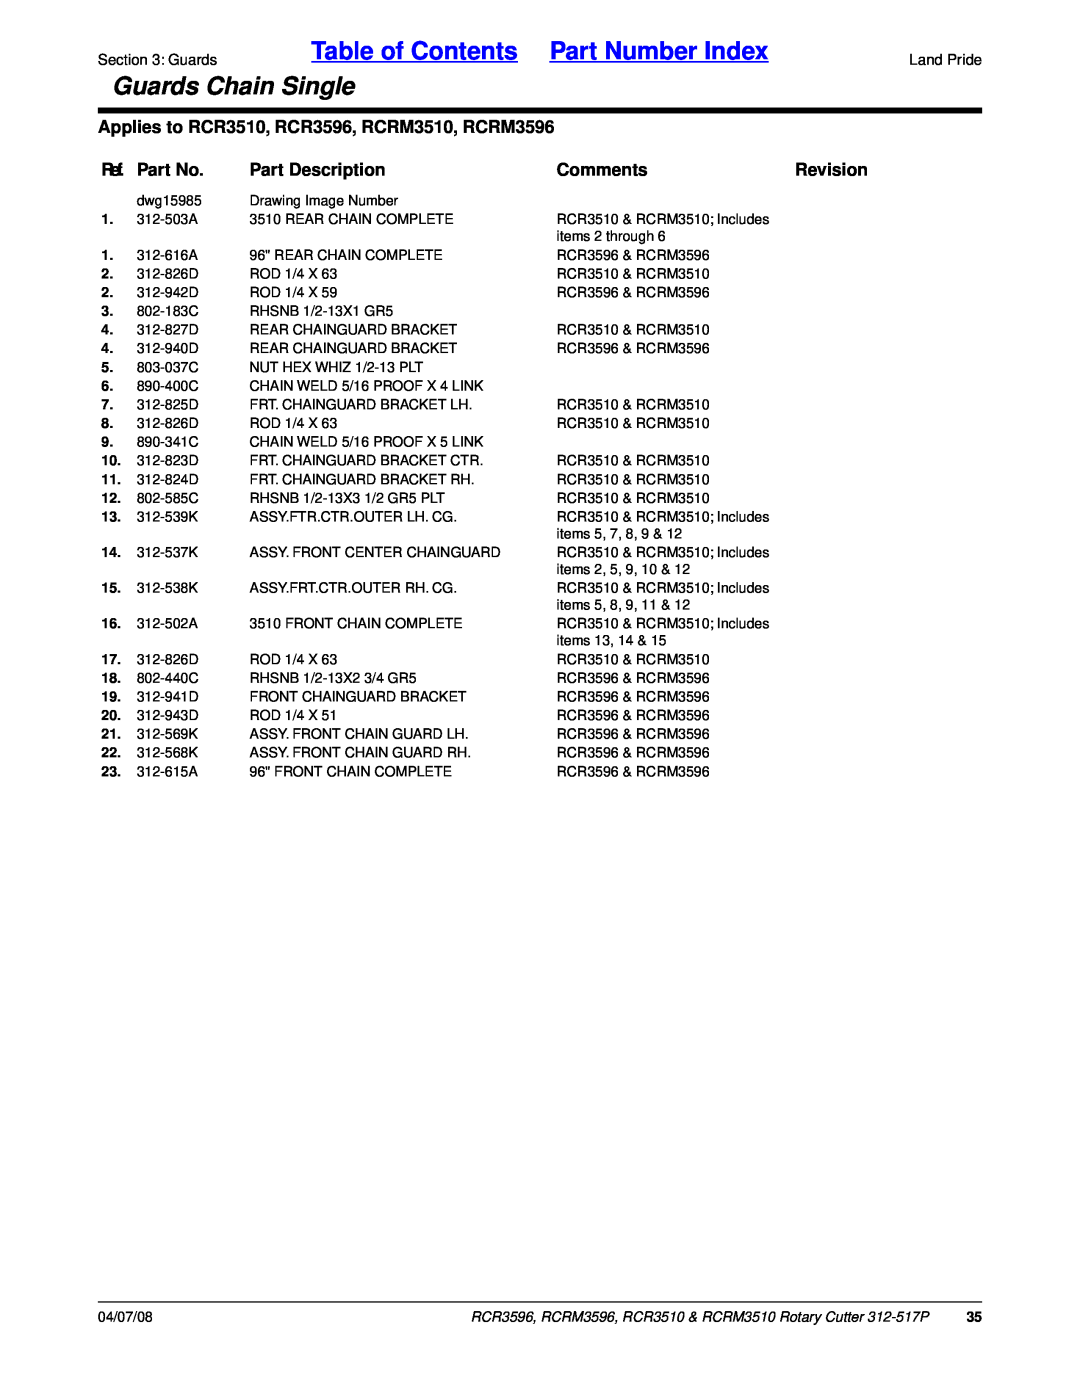 Land Pride RCR3596 Table of Contents Part Number Index, Guards Chain Single, Ref. Part No, Part Description, Comments 